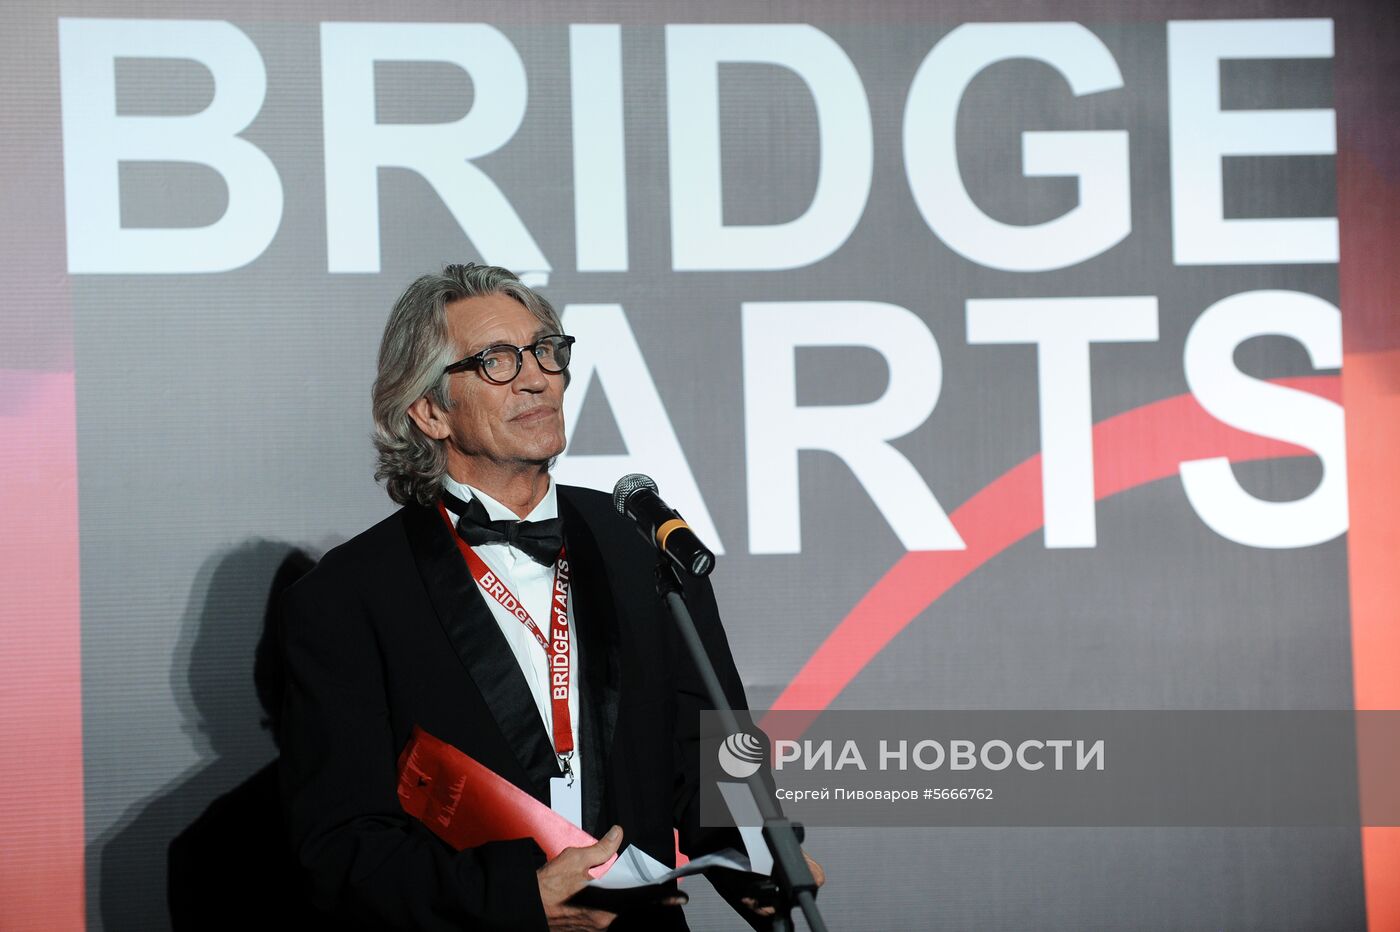 Закрытие фестиваля Bridge of Arts 2018 в Ростове-на-Дону